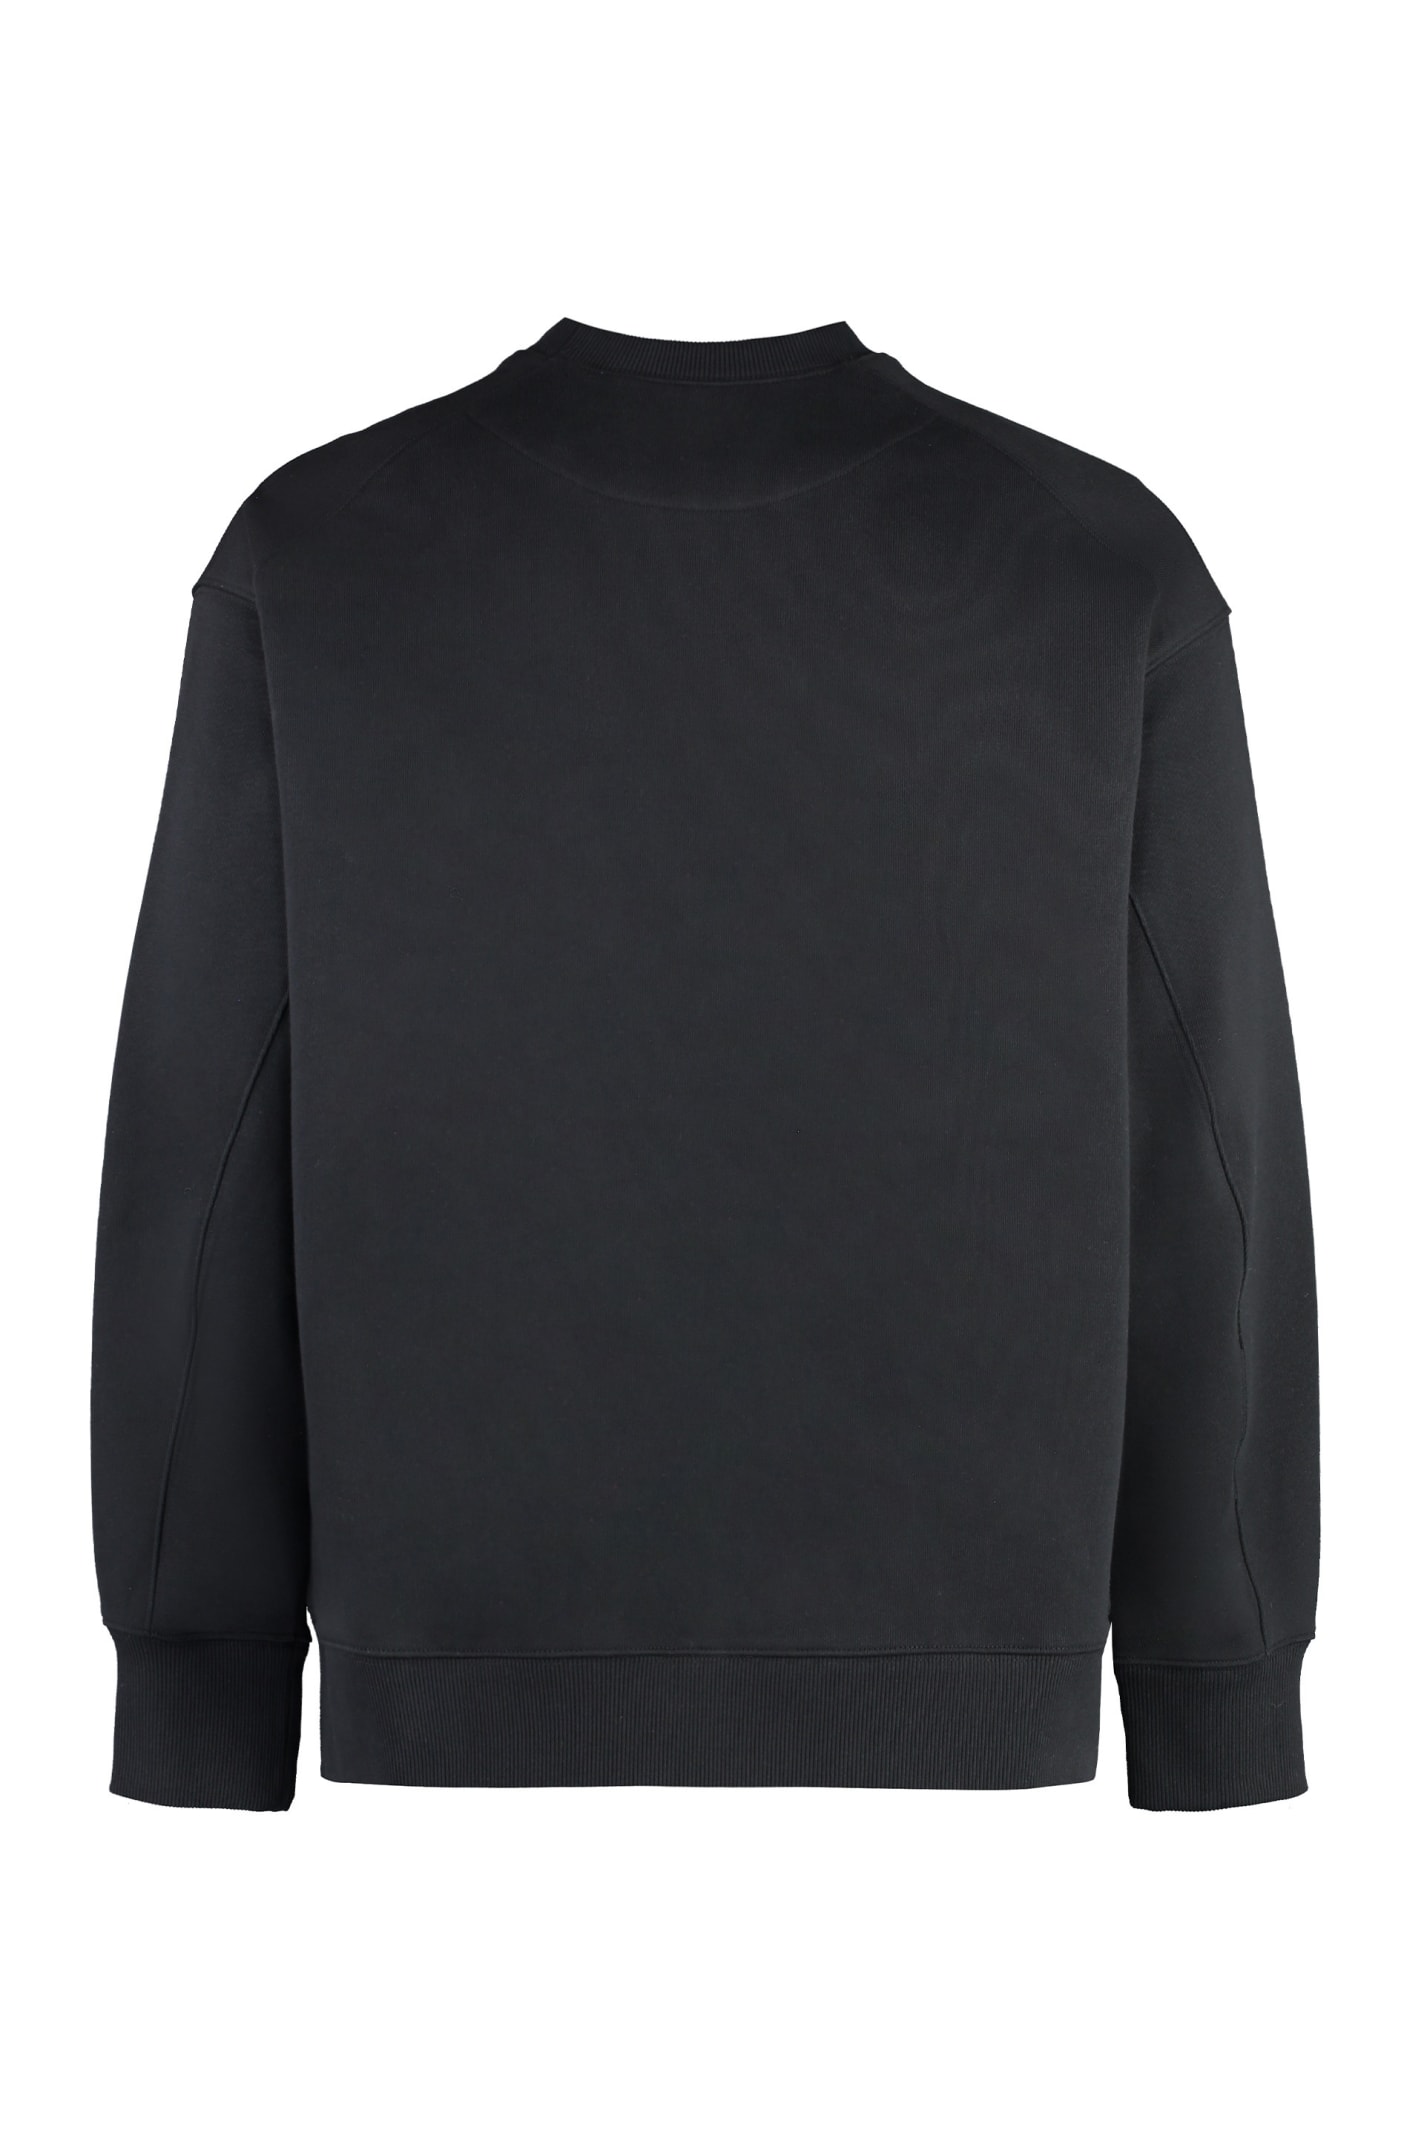 Shop Y-3 Cotton Crew-neck Sweatshirt In Black